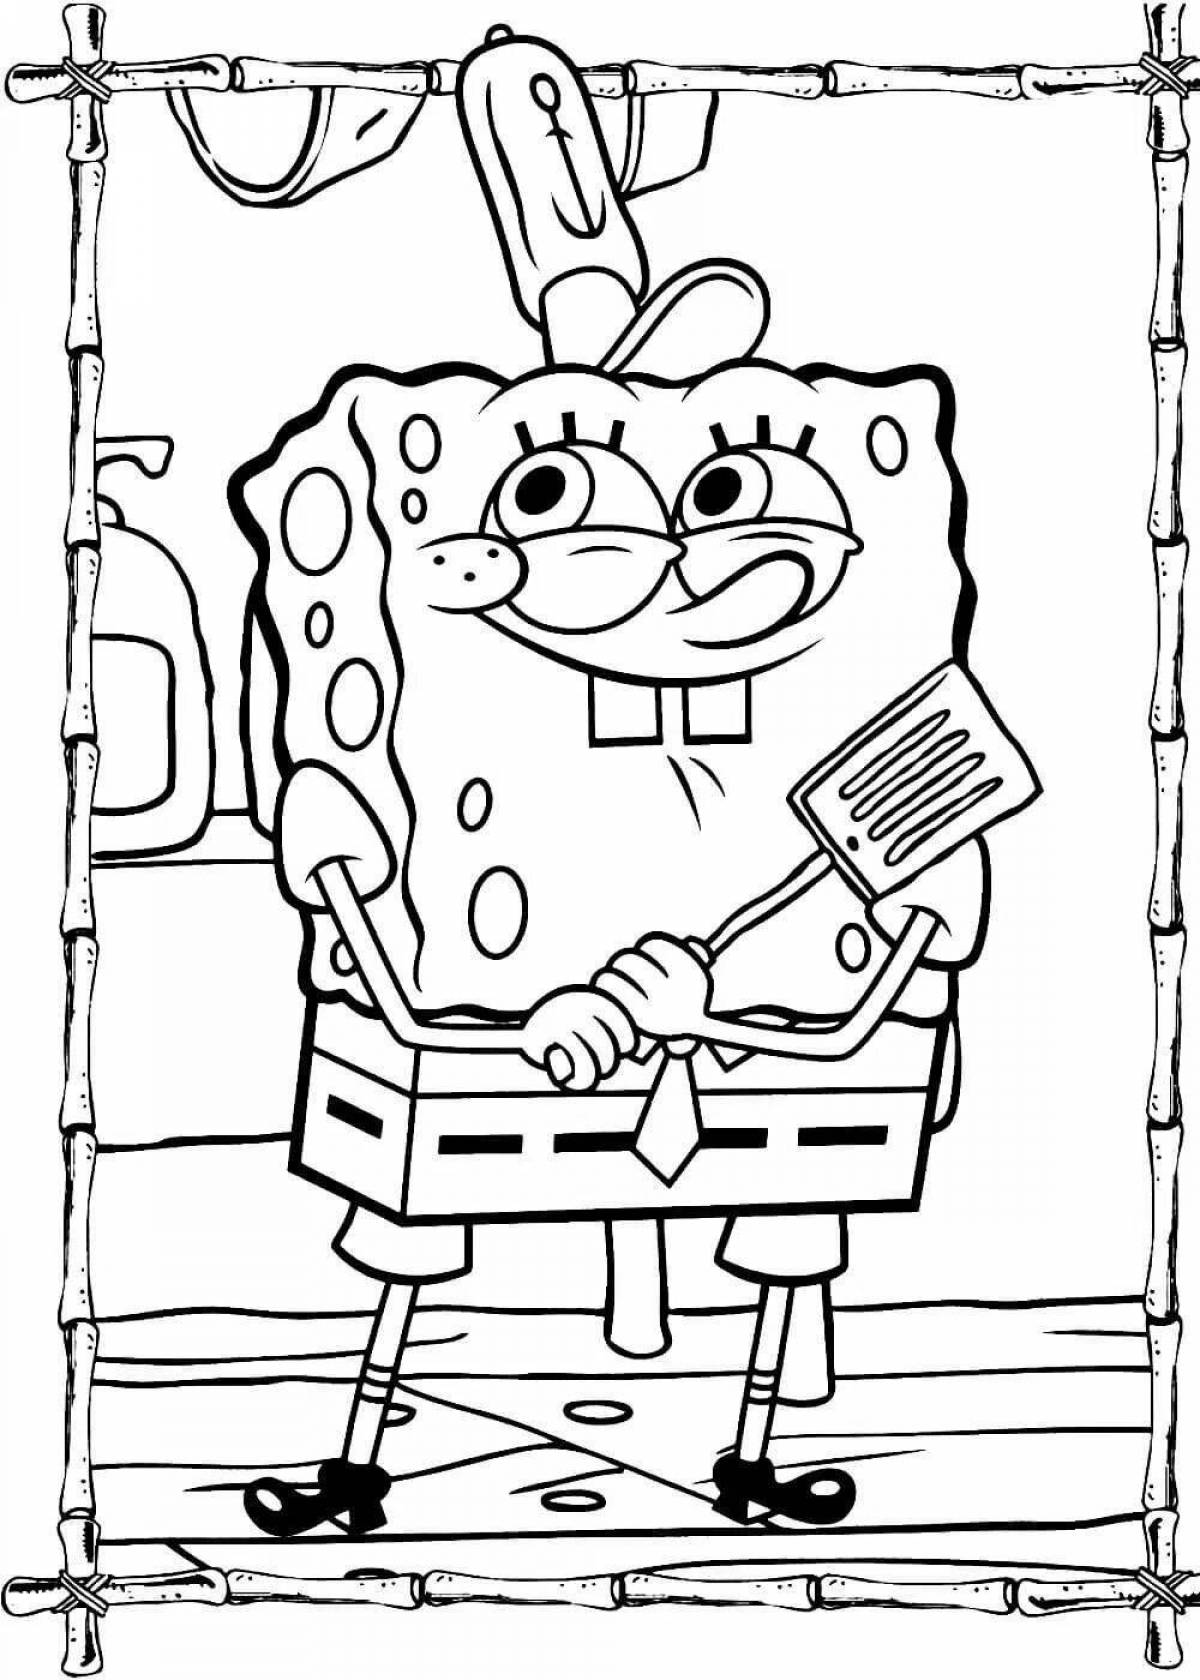 Printed spongebob fun coloring book